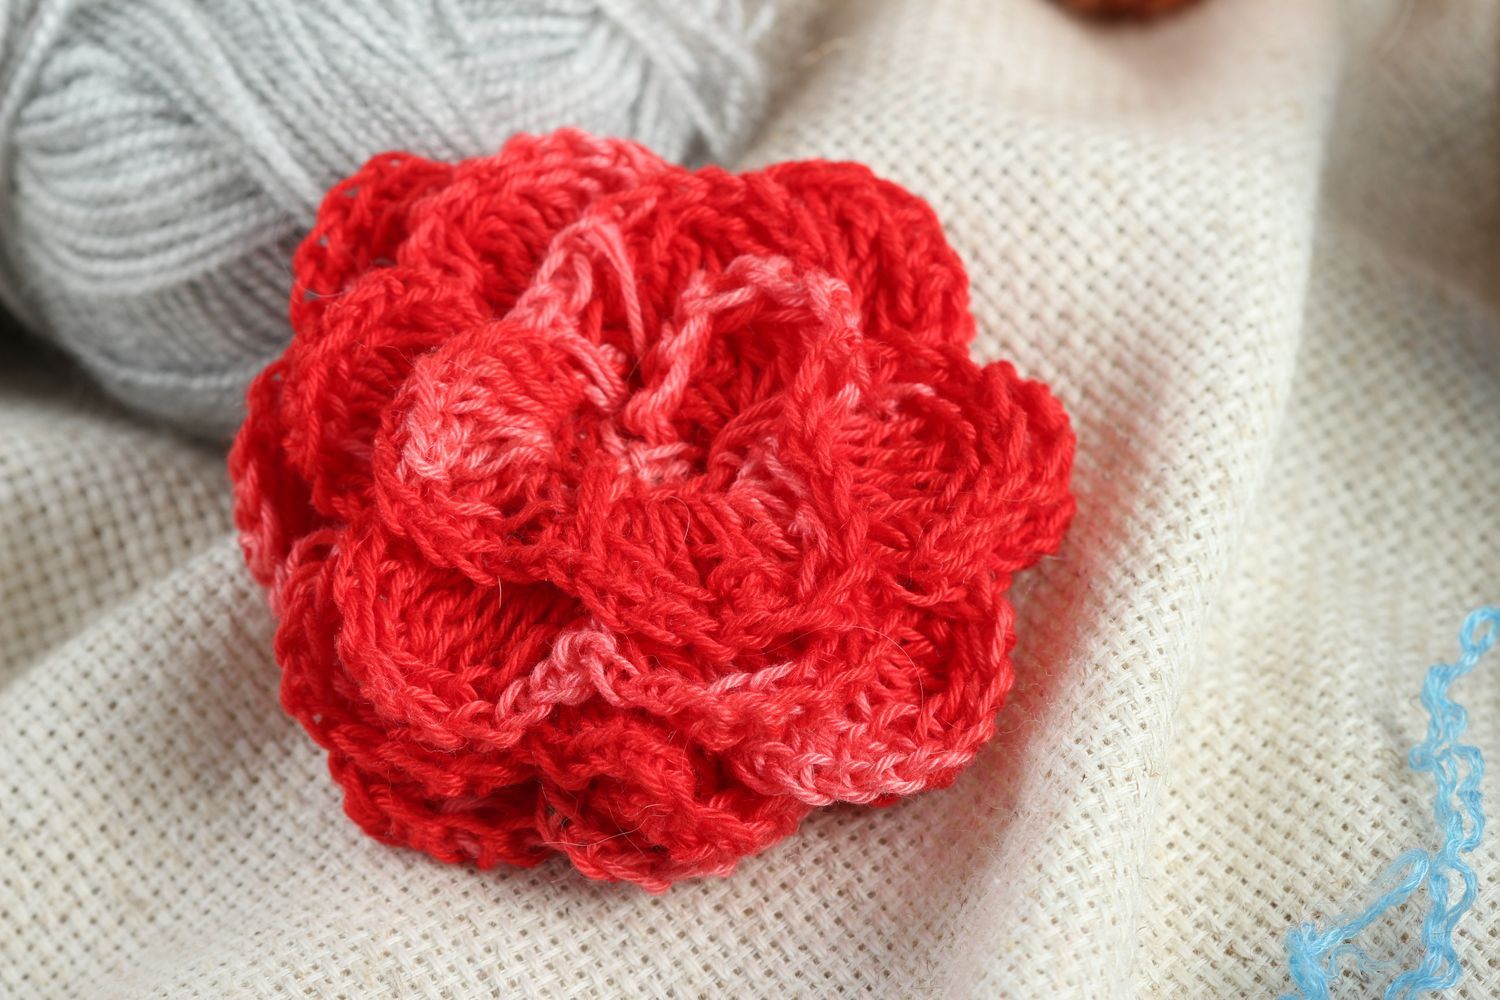 Красный вязаный цветок ручной работы фурнитура для броши фурнитура для бижутерии фото 1